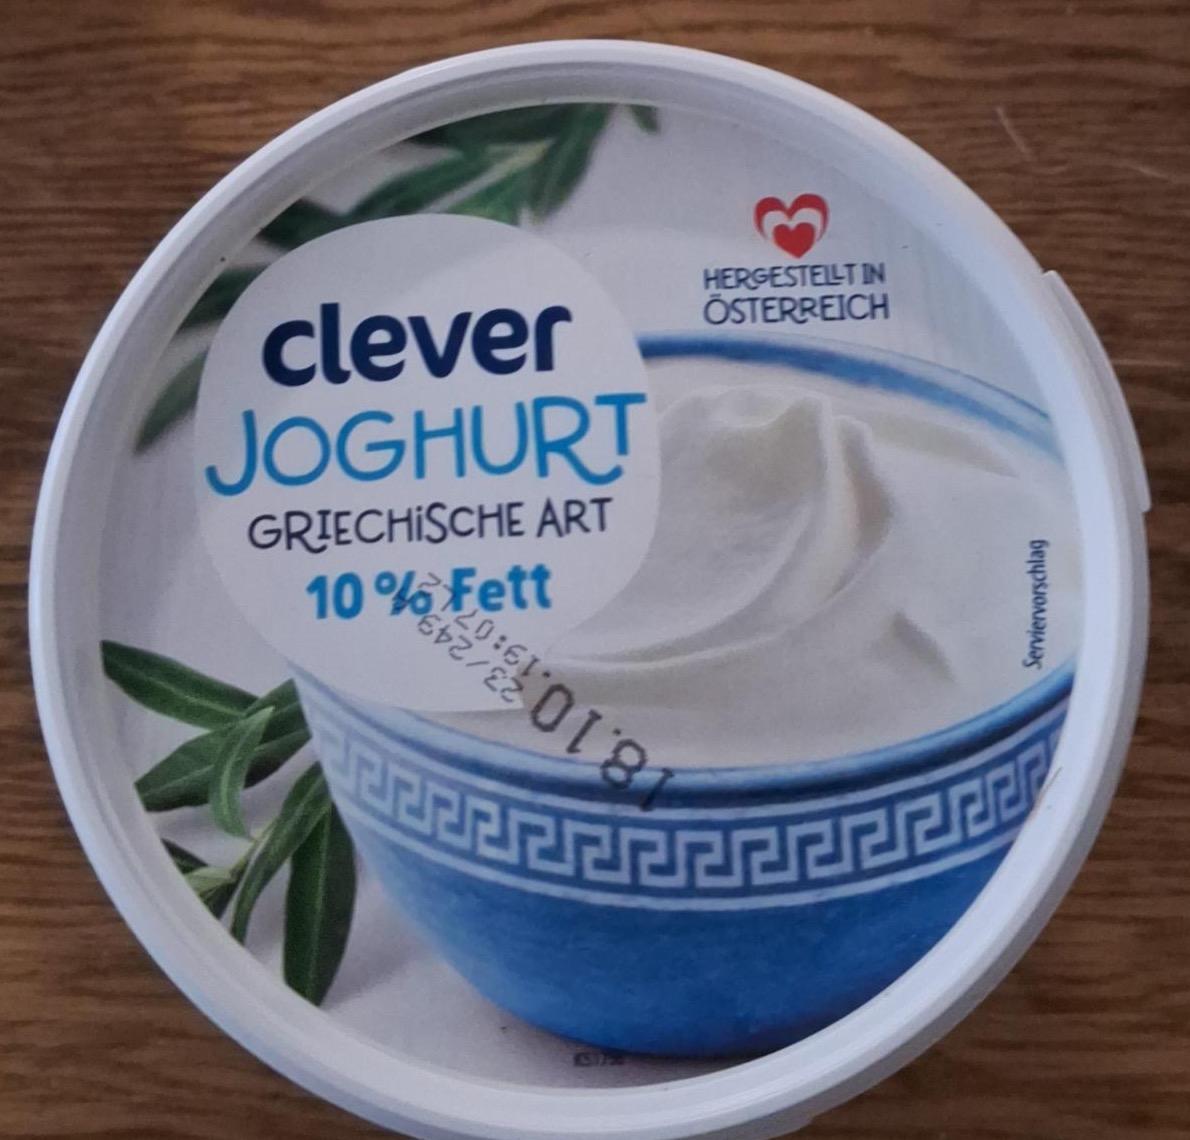 Képek - Joghurt griechische art 10% fett Clever